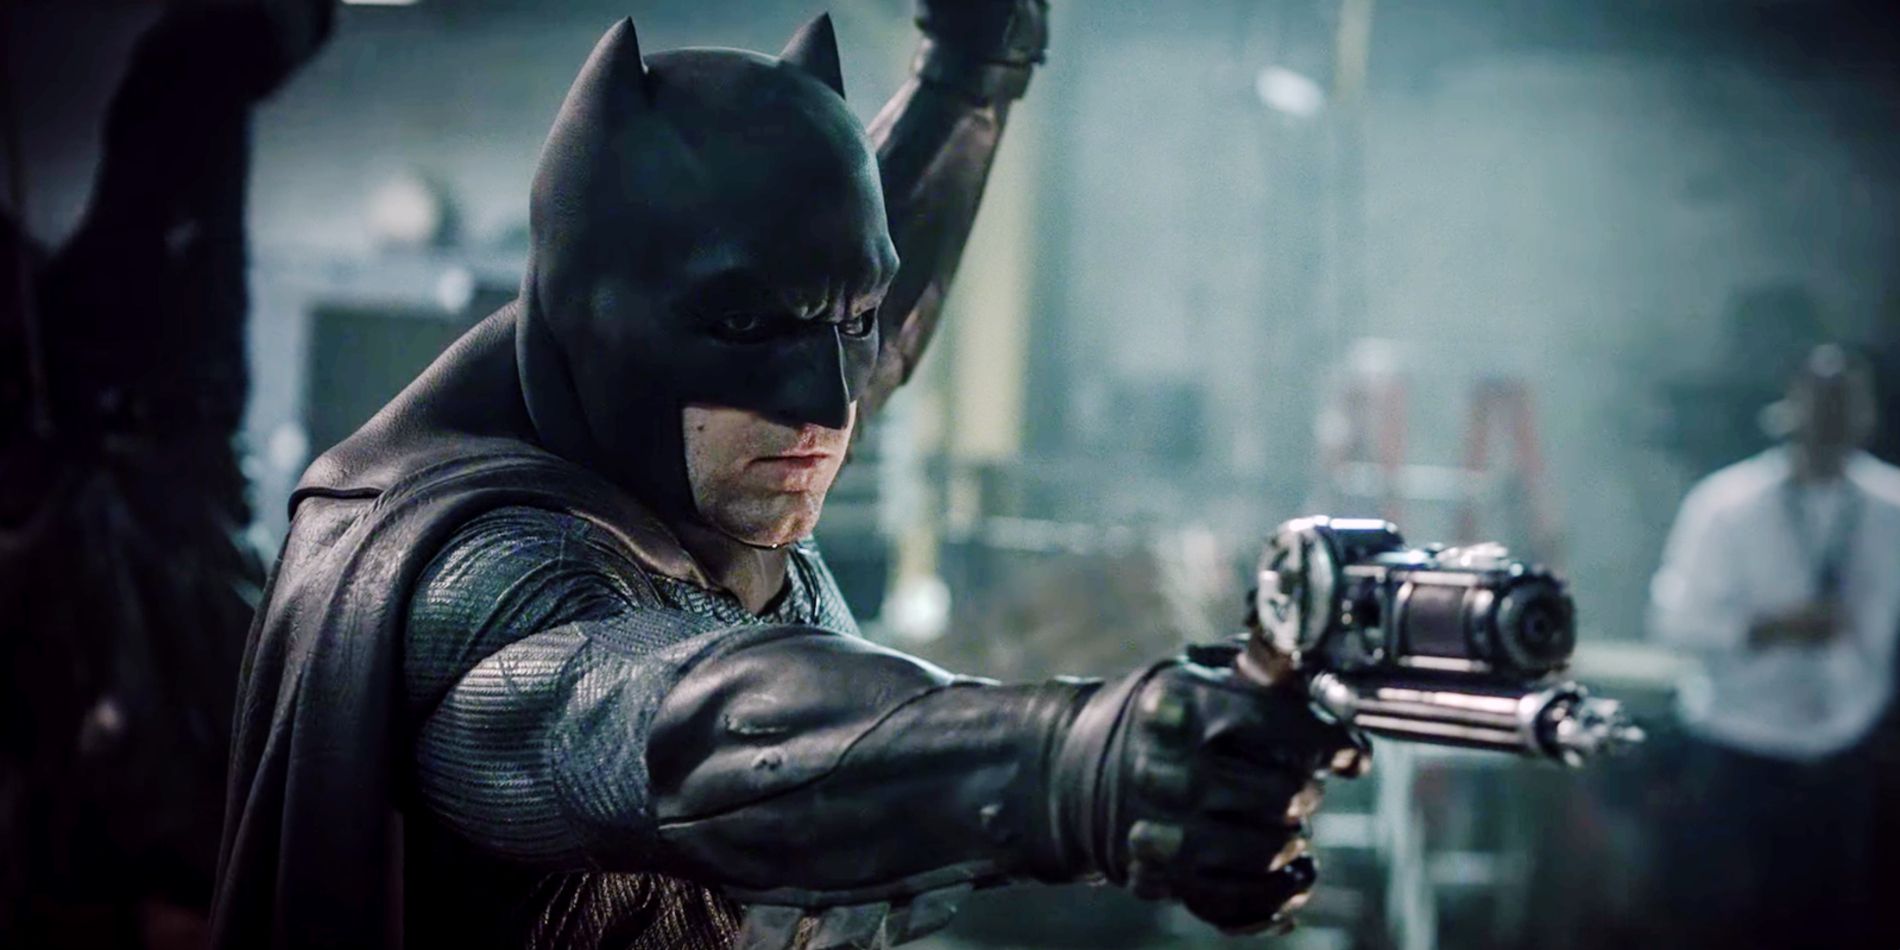 Ben Affleck's Batman wielding his grapnel gun in Batman V Superman: Dawn Of Justice